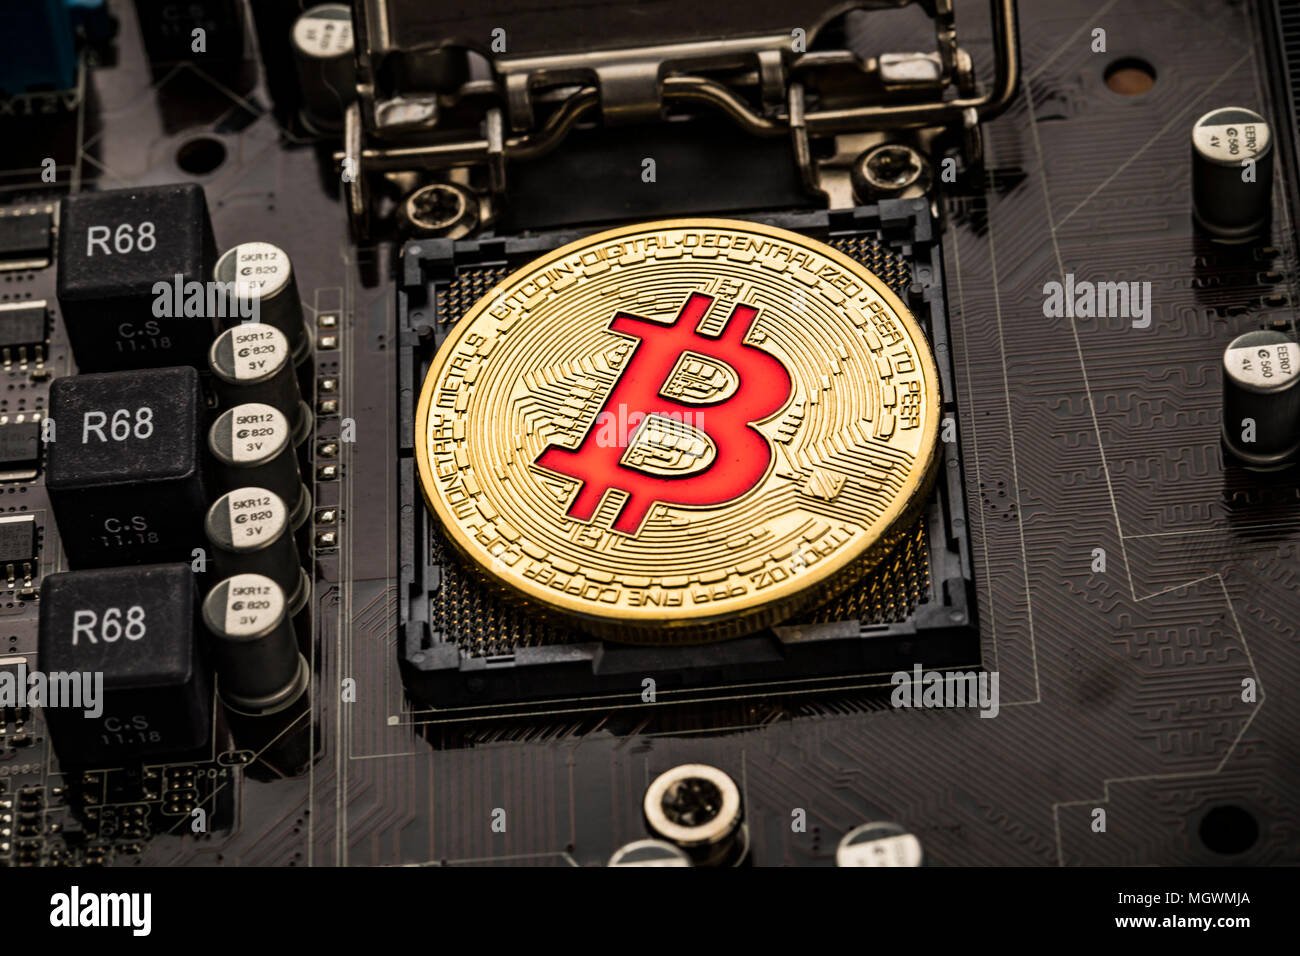 Pièce de monnaie en or peu BTC sur la carte mère. Bitcoin est un cryptocurrency dans le monde numérique et système de paiement appelé le premier cu numériques décentralisés Banque D'Images